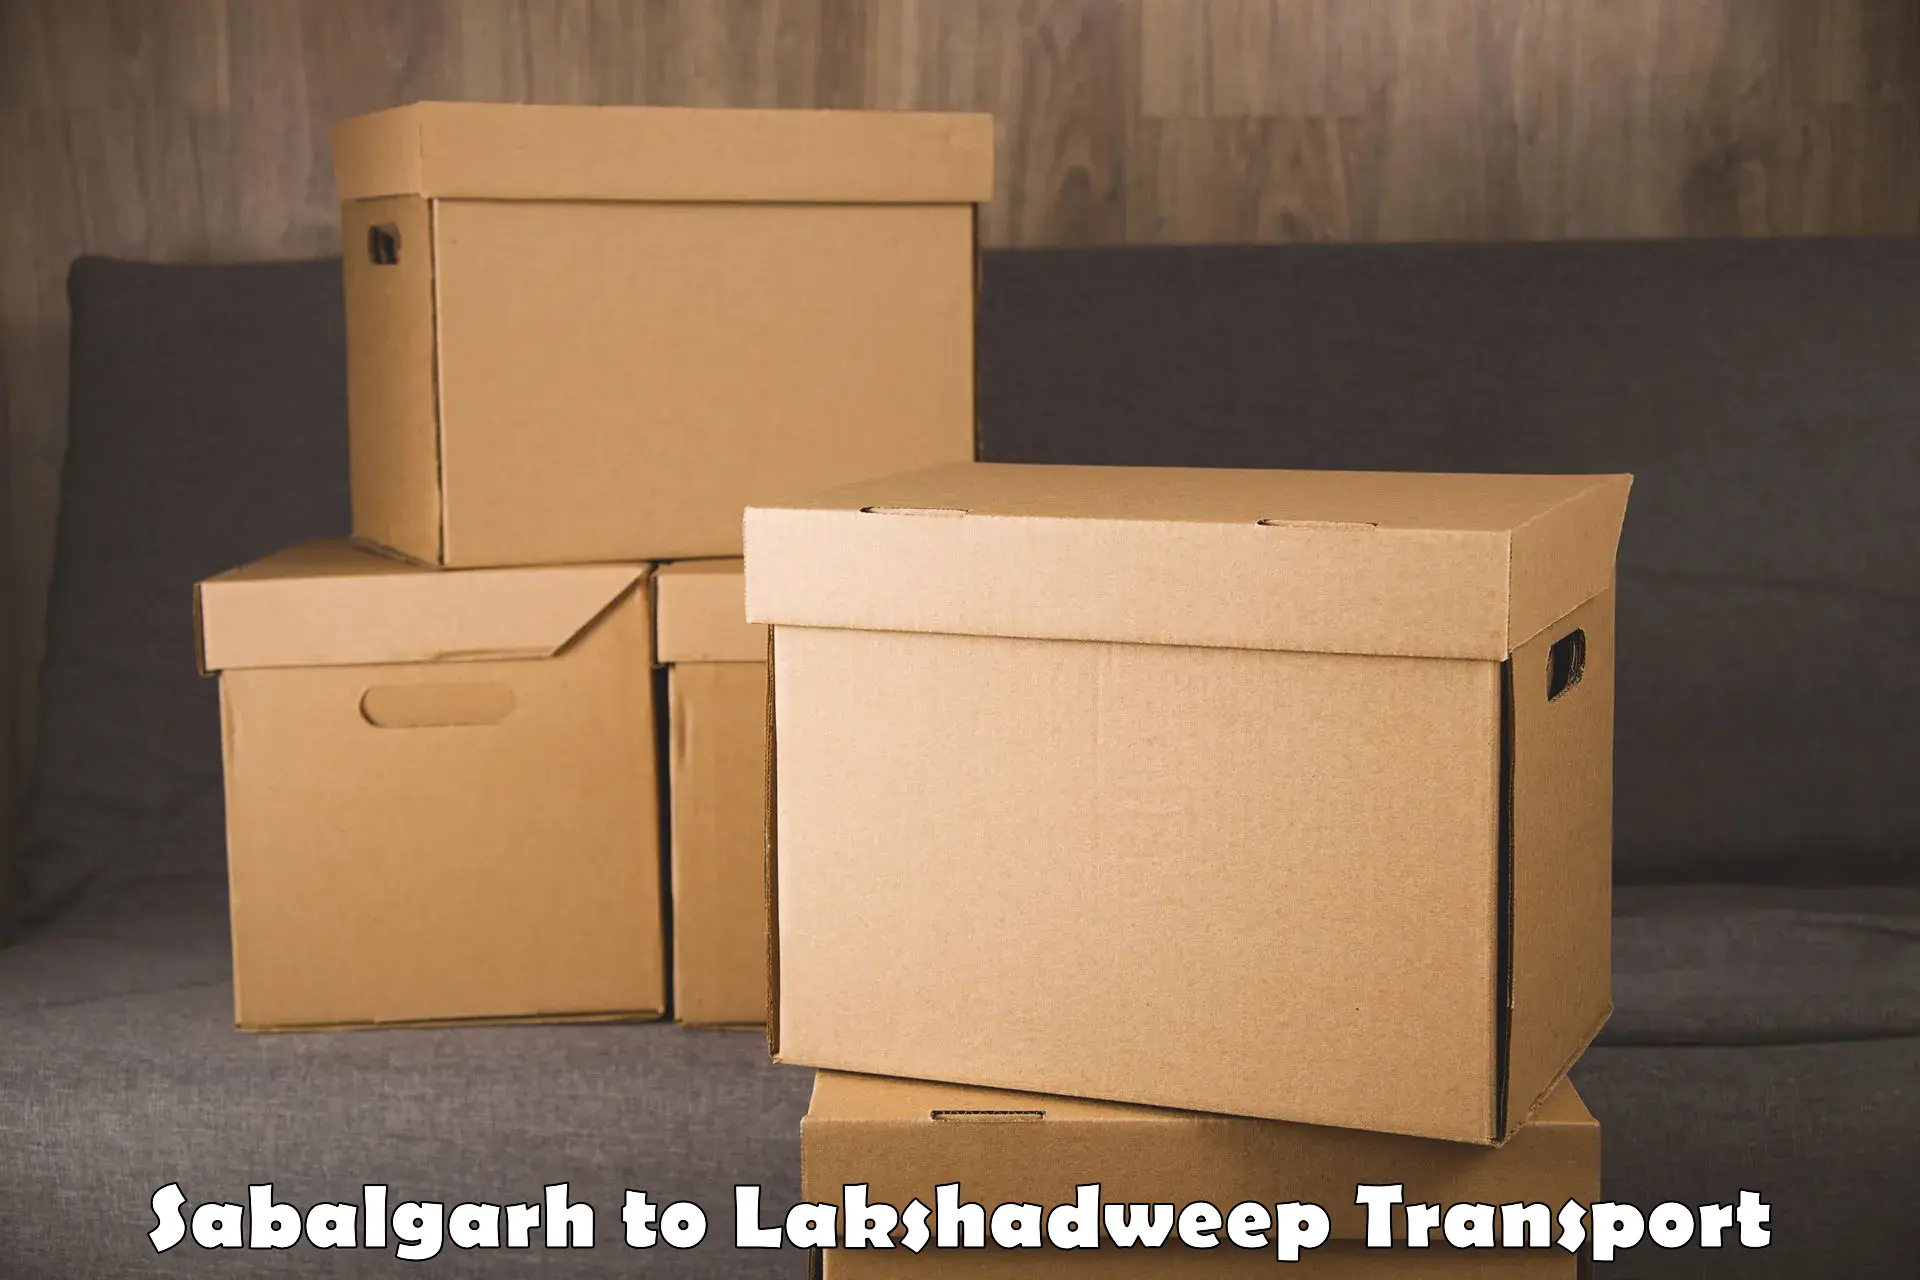 Pick up transport service Sabalgarh to Lakshadweep